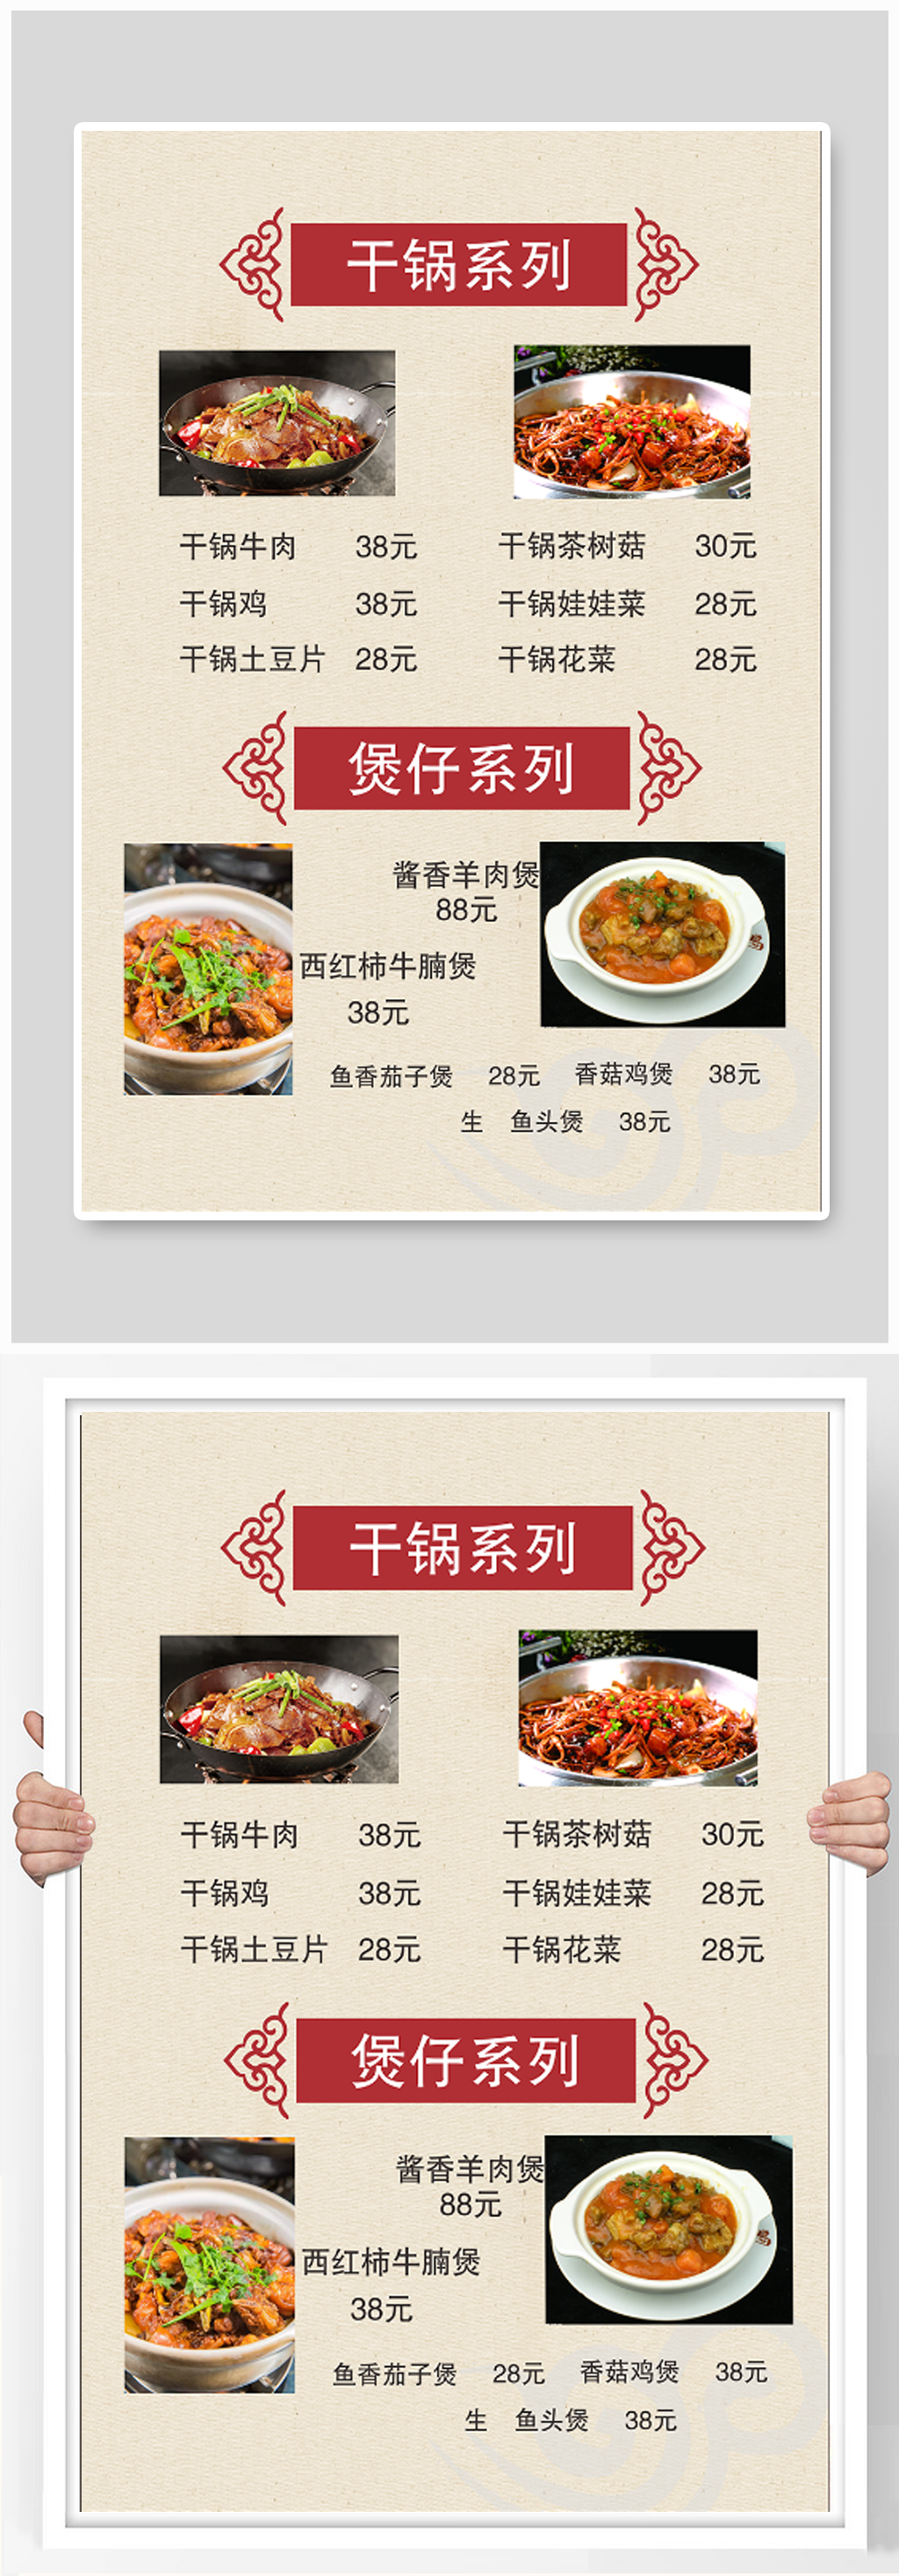 干锅系列菜单价格表餐牌